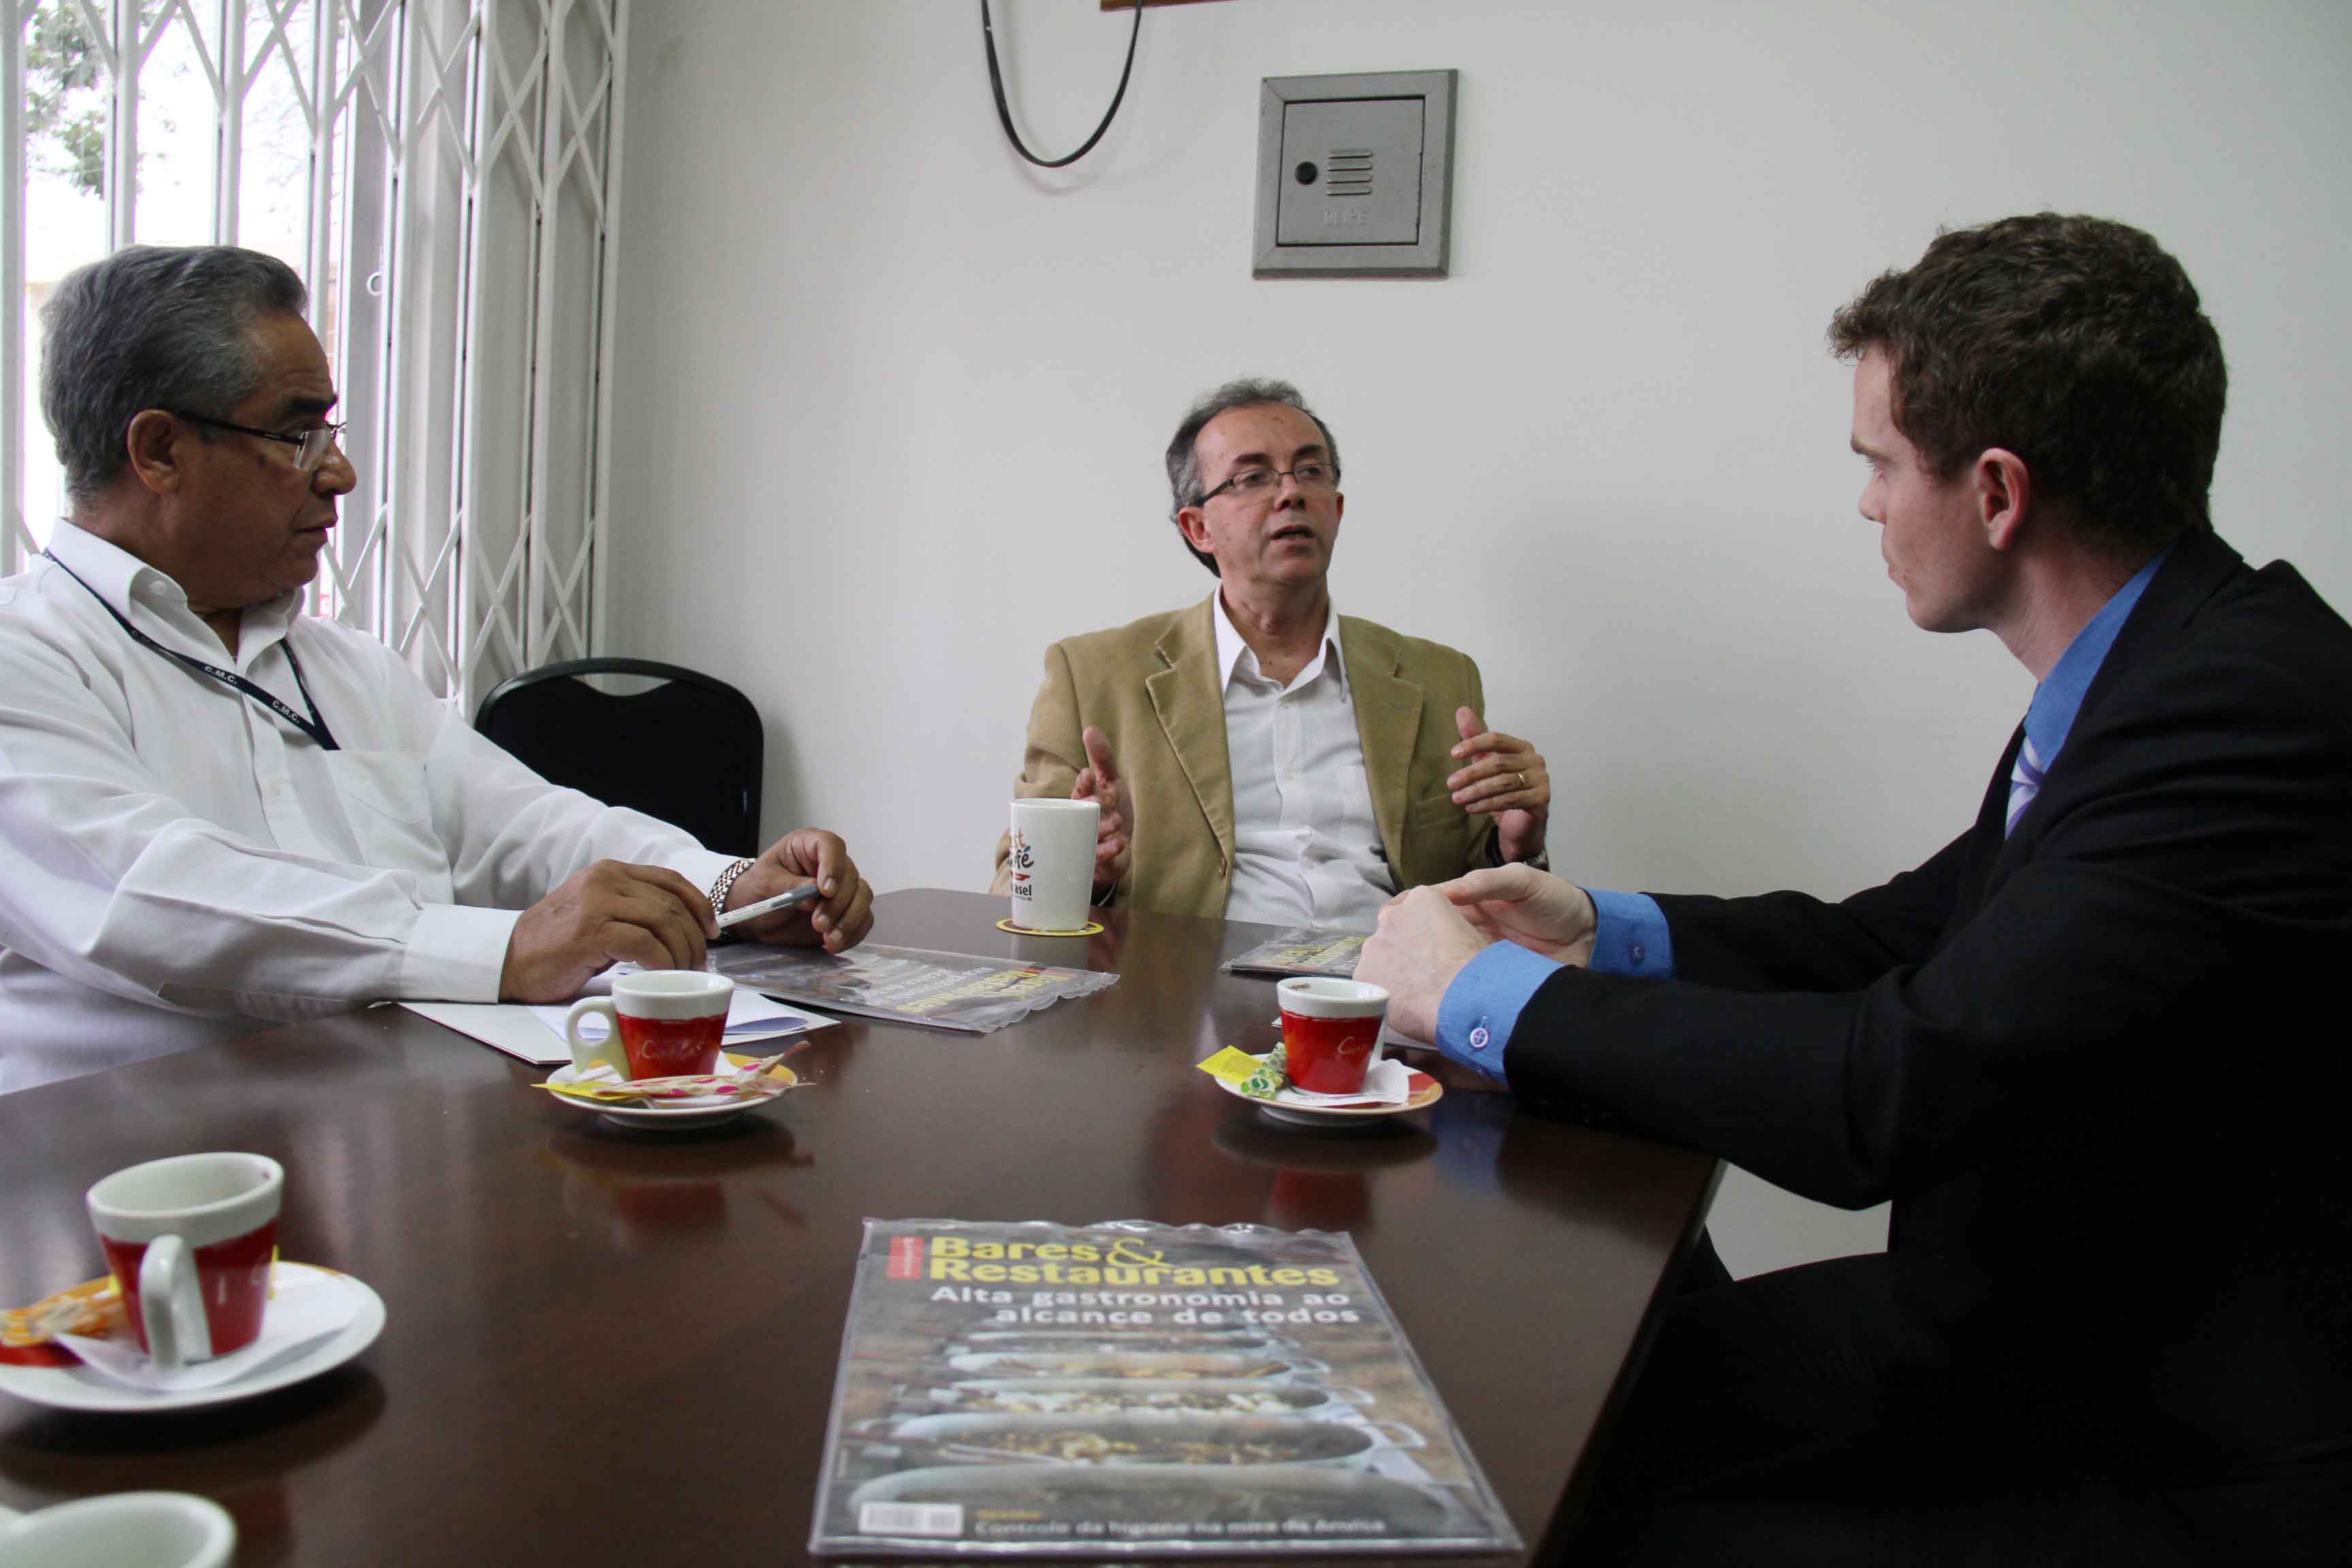 Bruno Pessuti e ABRASEL discutem campanha sobre porções reduzidas em restaurantes - Bruno Pessuti